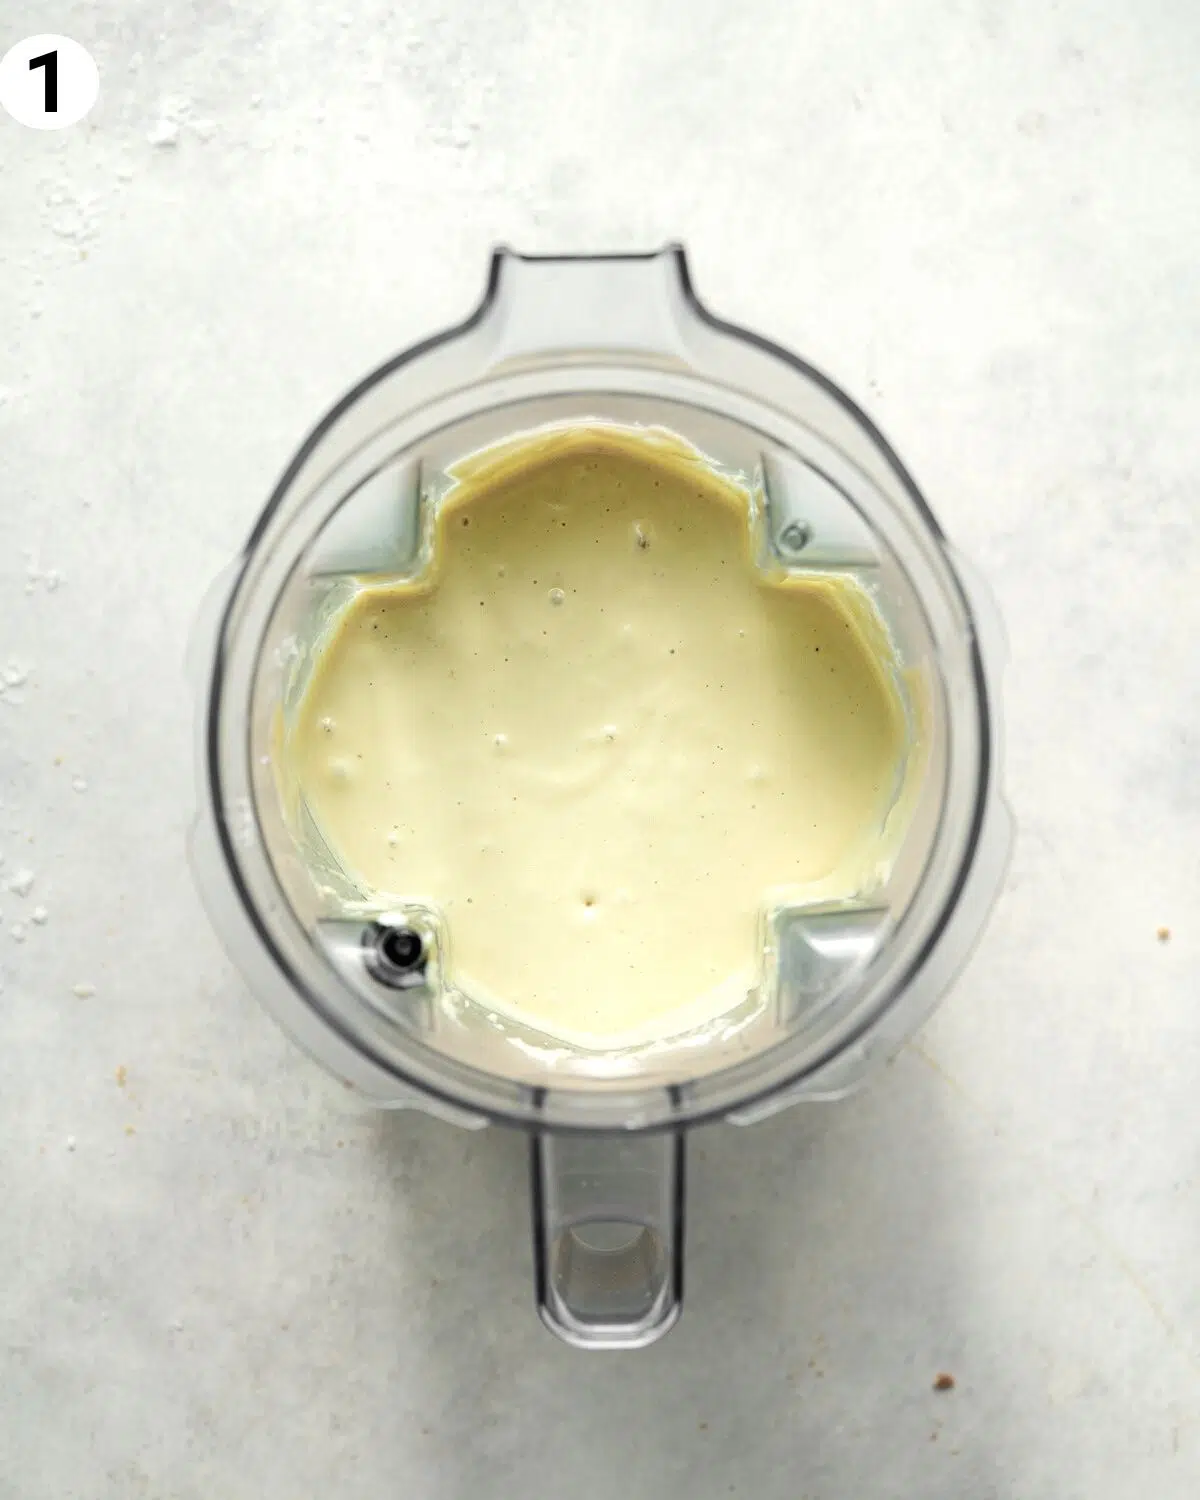 pistachio ice cream in a blender.